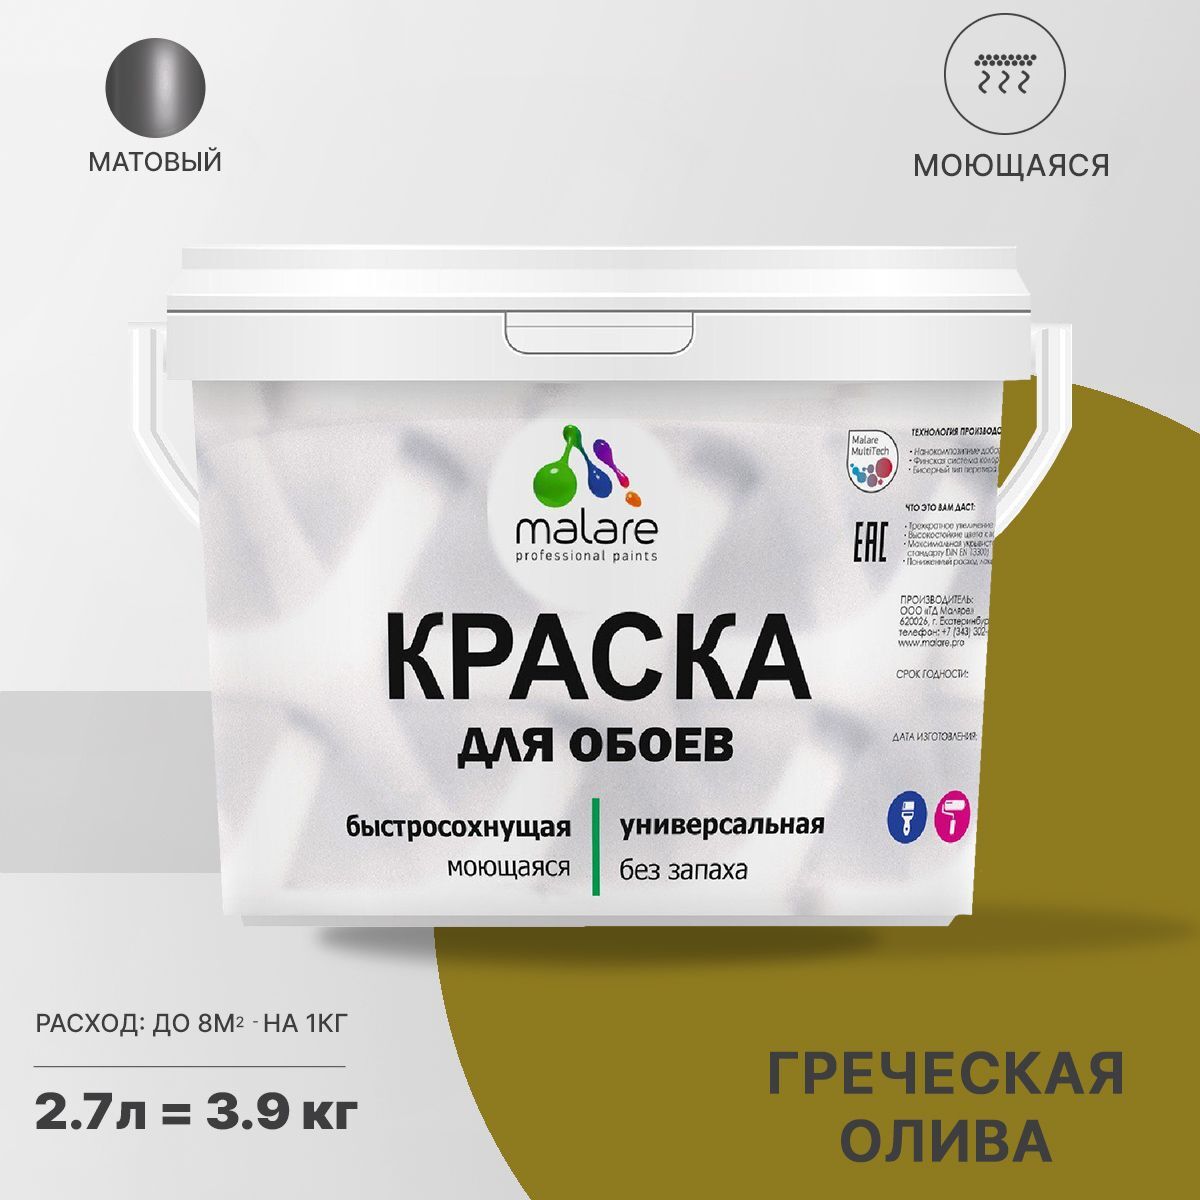 Краска Malare Professional специализированная Акриловая, 3,9 кг греческая олива